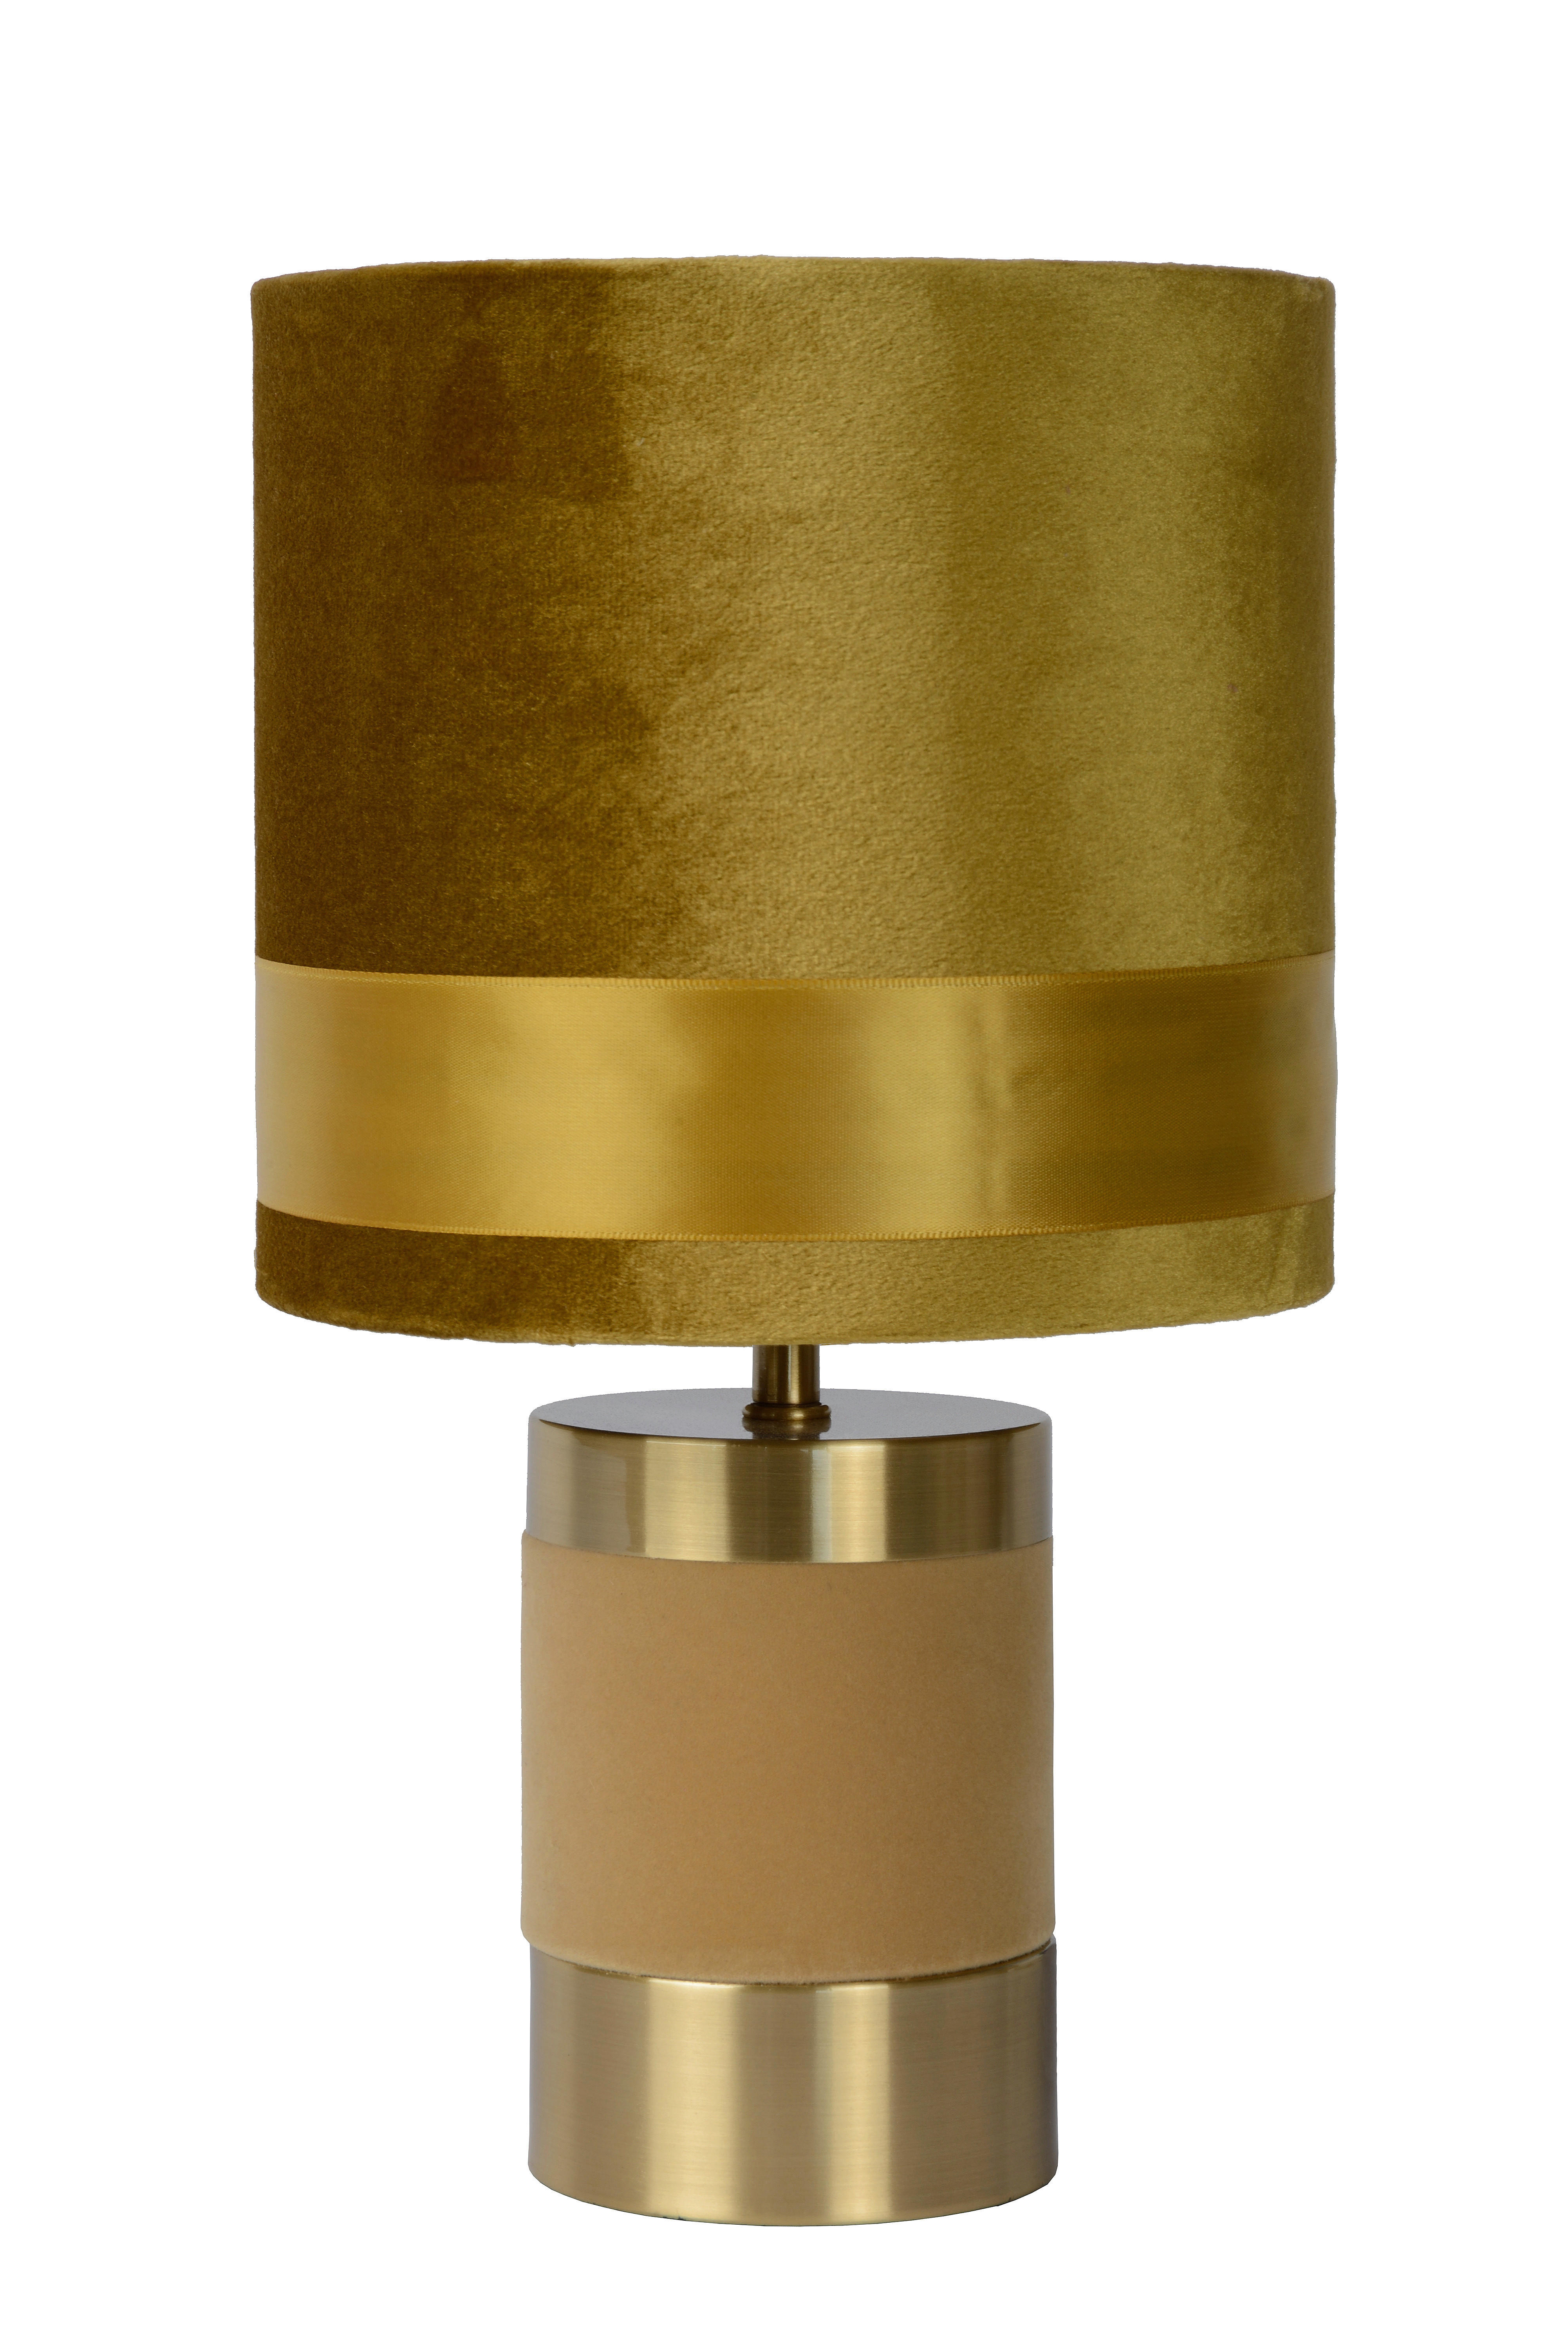 TISCHLEUCHTE EXTRAVAGANZA FRIZZLE 18/32 cm   - Gelb/Goldfarben, Design, Textil/Metall (18/32cm) - Lucide